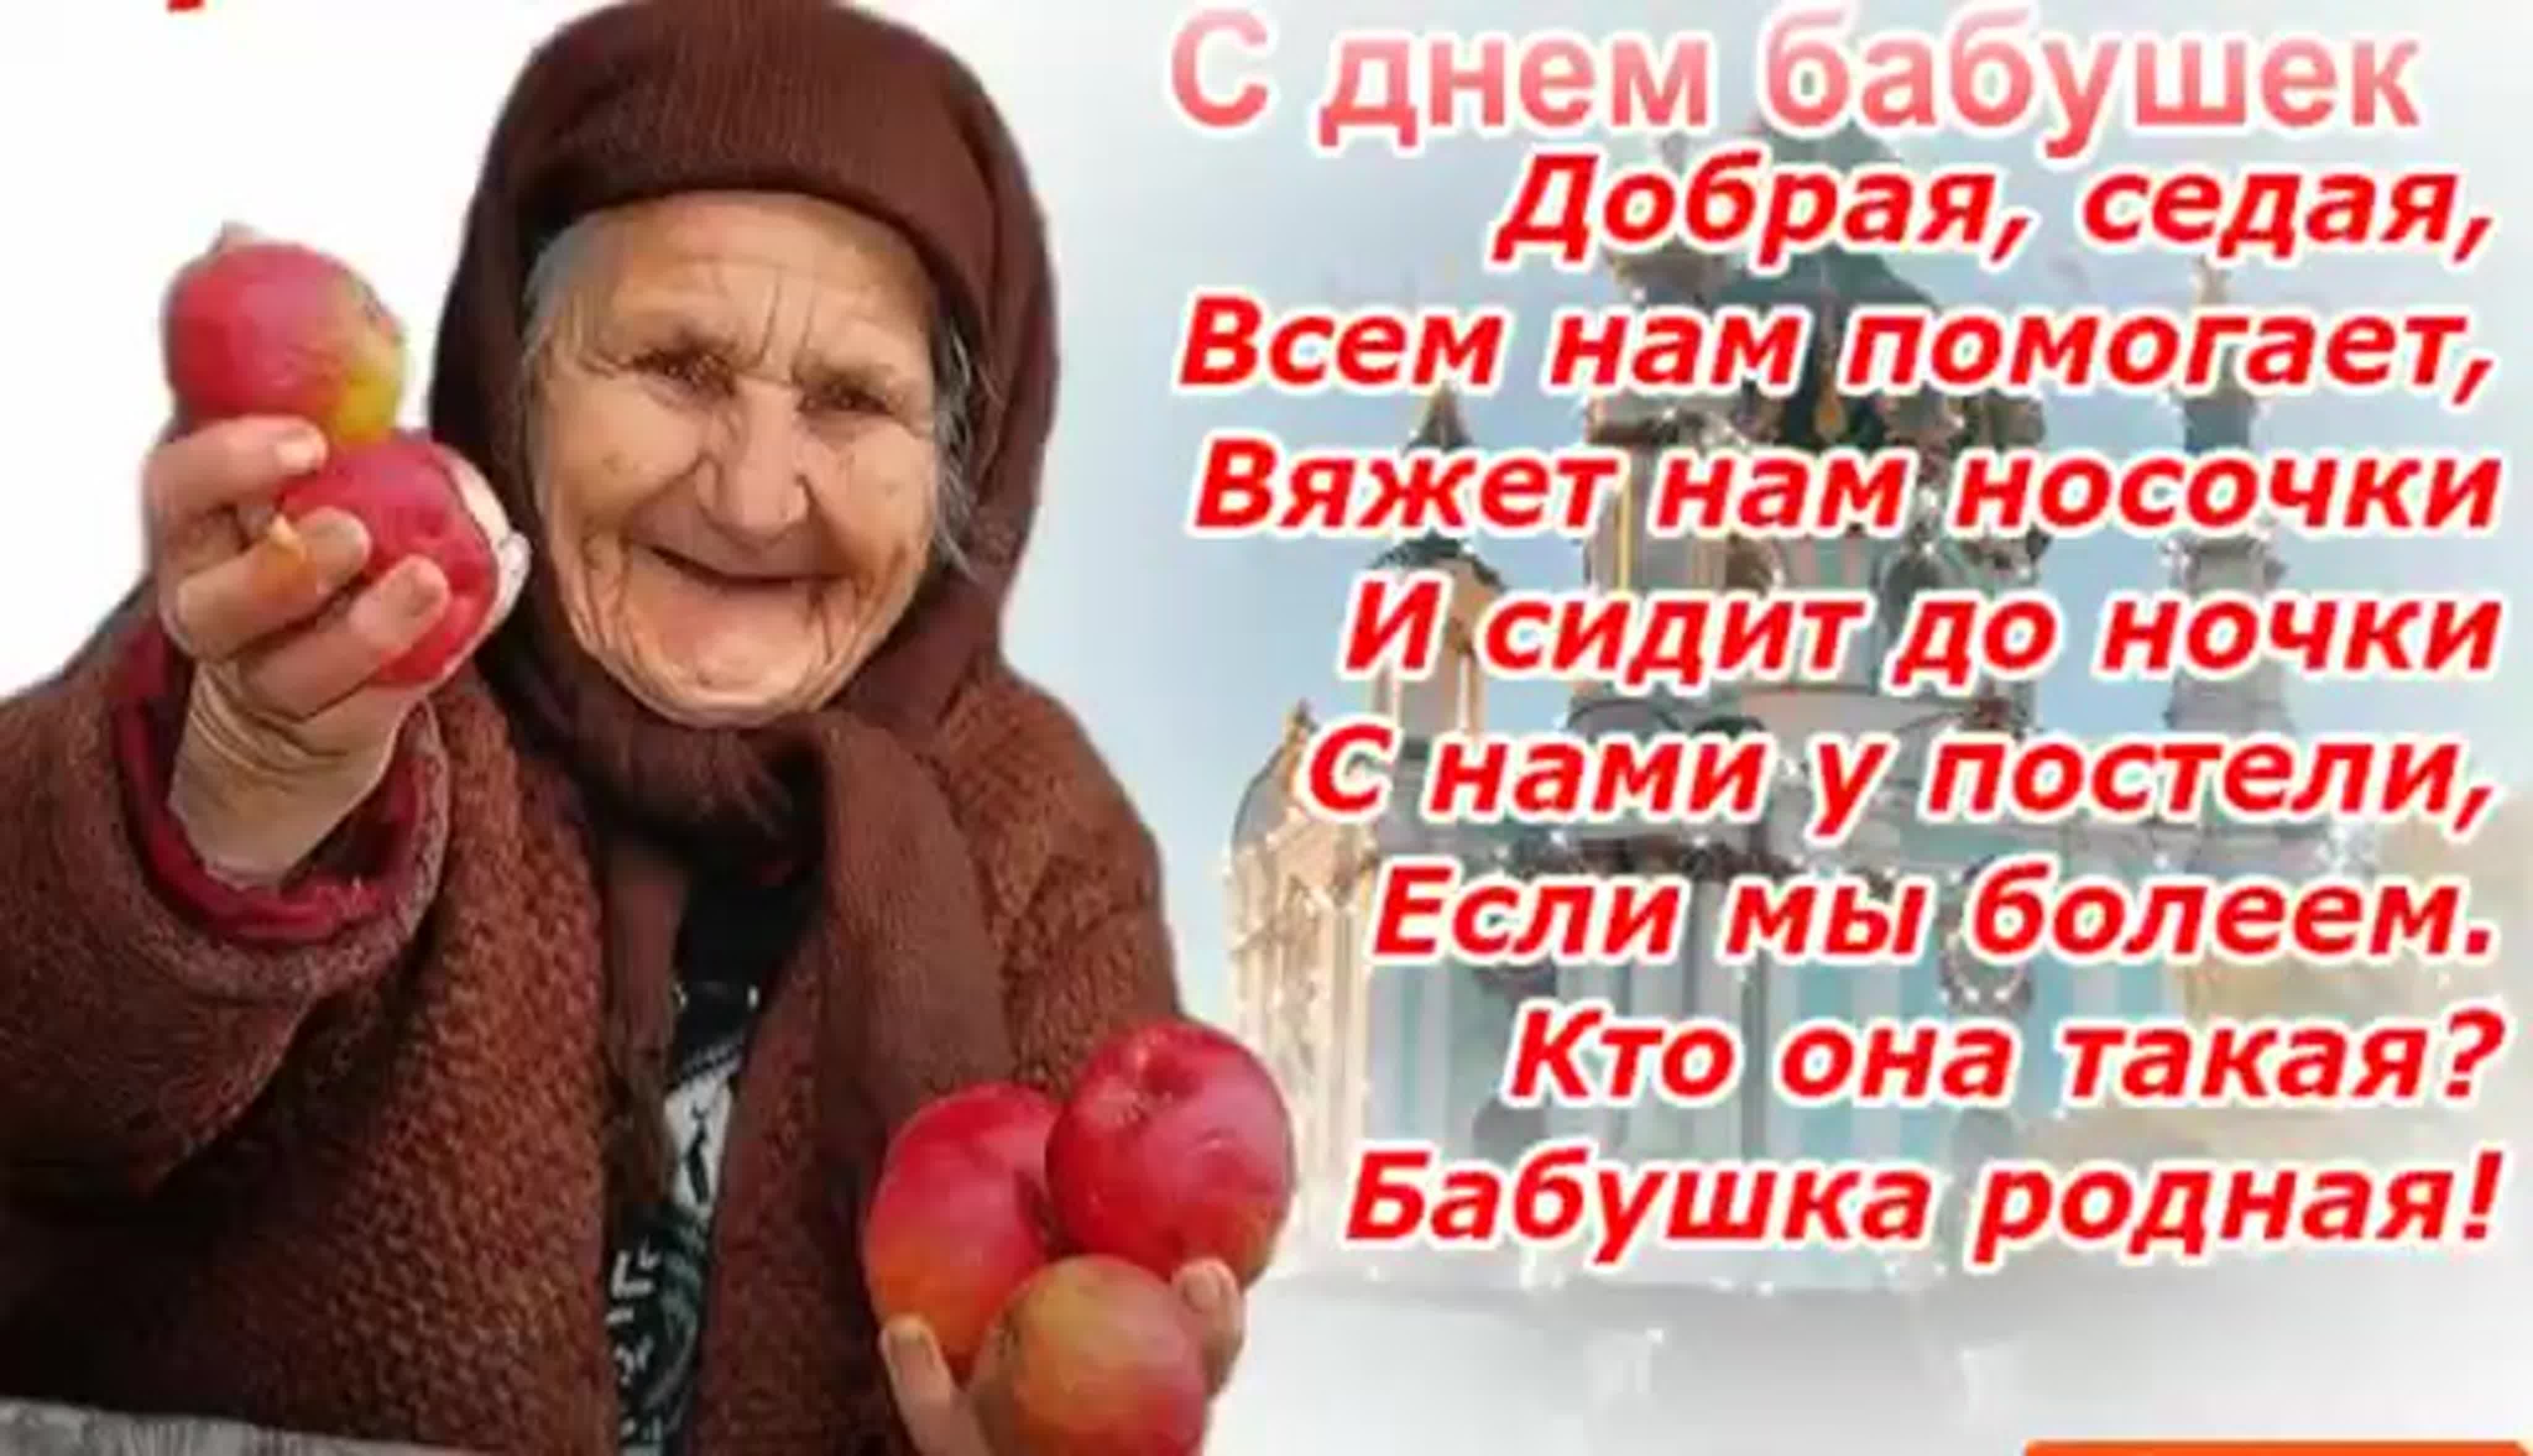 Когда день бабушек в беларуси. Поздравление сднем бабушкк. Плздравления с днём бабушек. С днём бабушек поздравления. Открытки с днём бабушек.